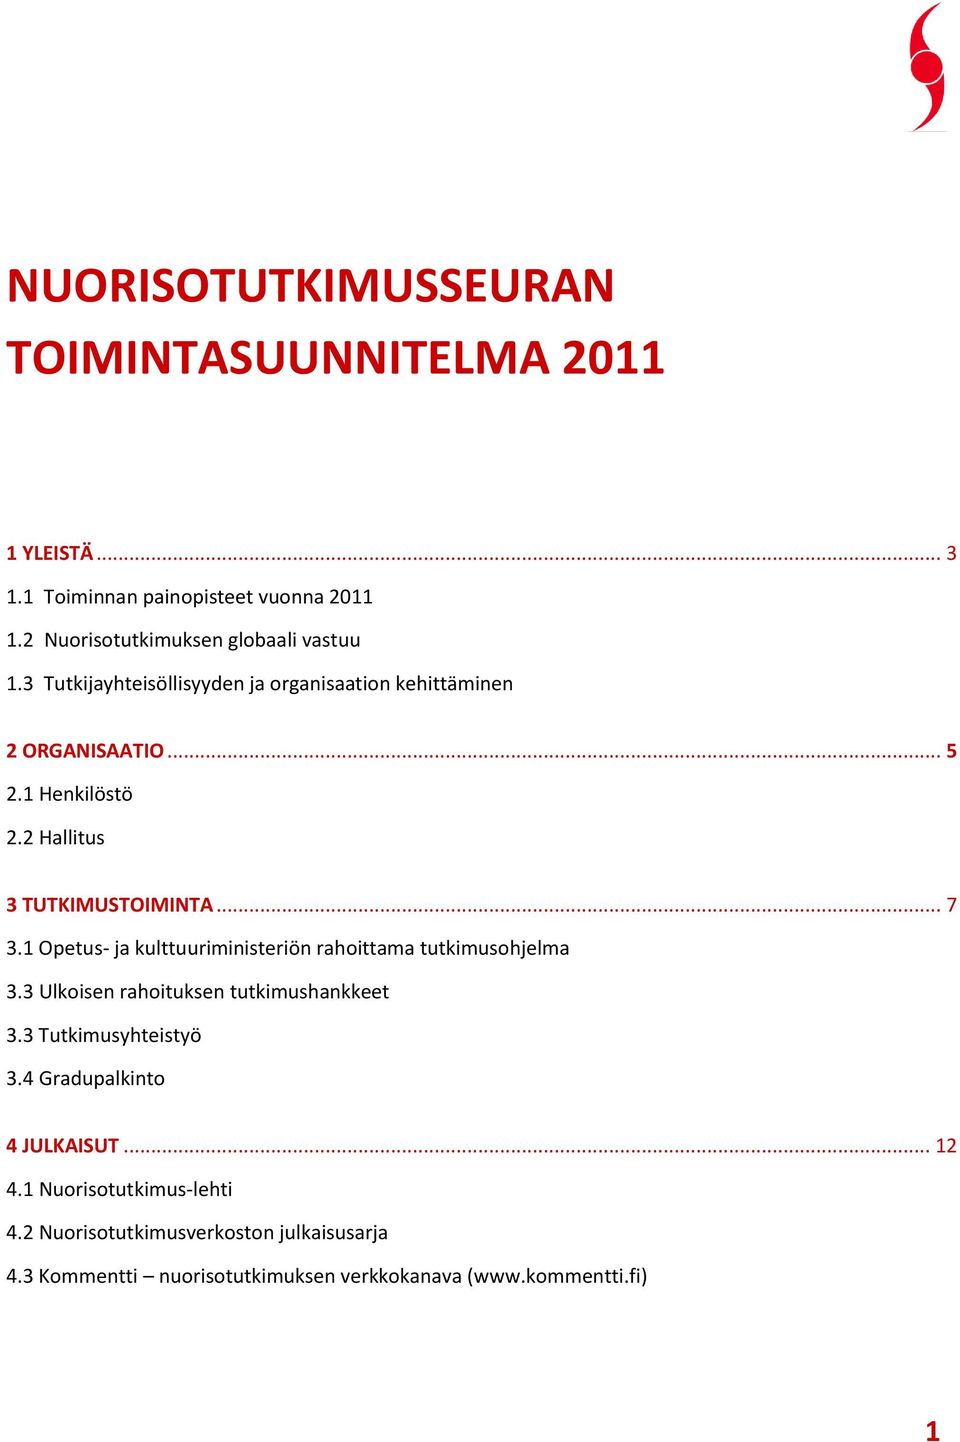 1 Opetus- ja kulttuuriministeriön rahoittama tutkimusohjelma 3.3 Ulkoisen rahoituksen tutkimushankkeet 3.3 Tutkimusyhteistyö 3.